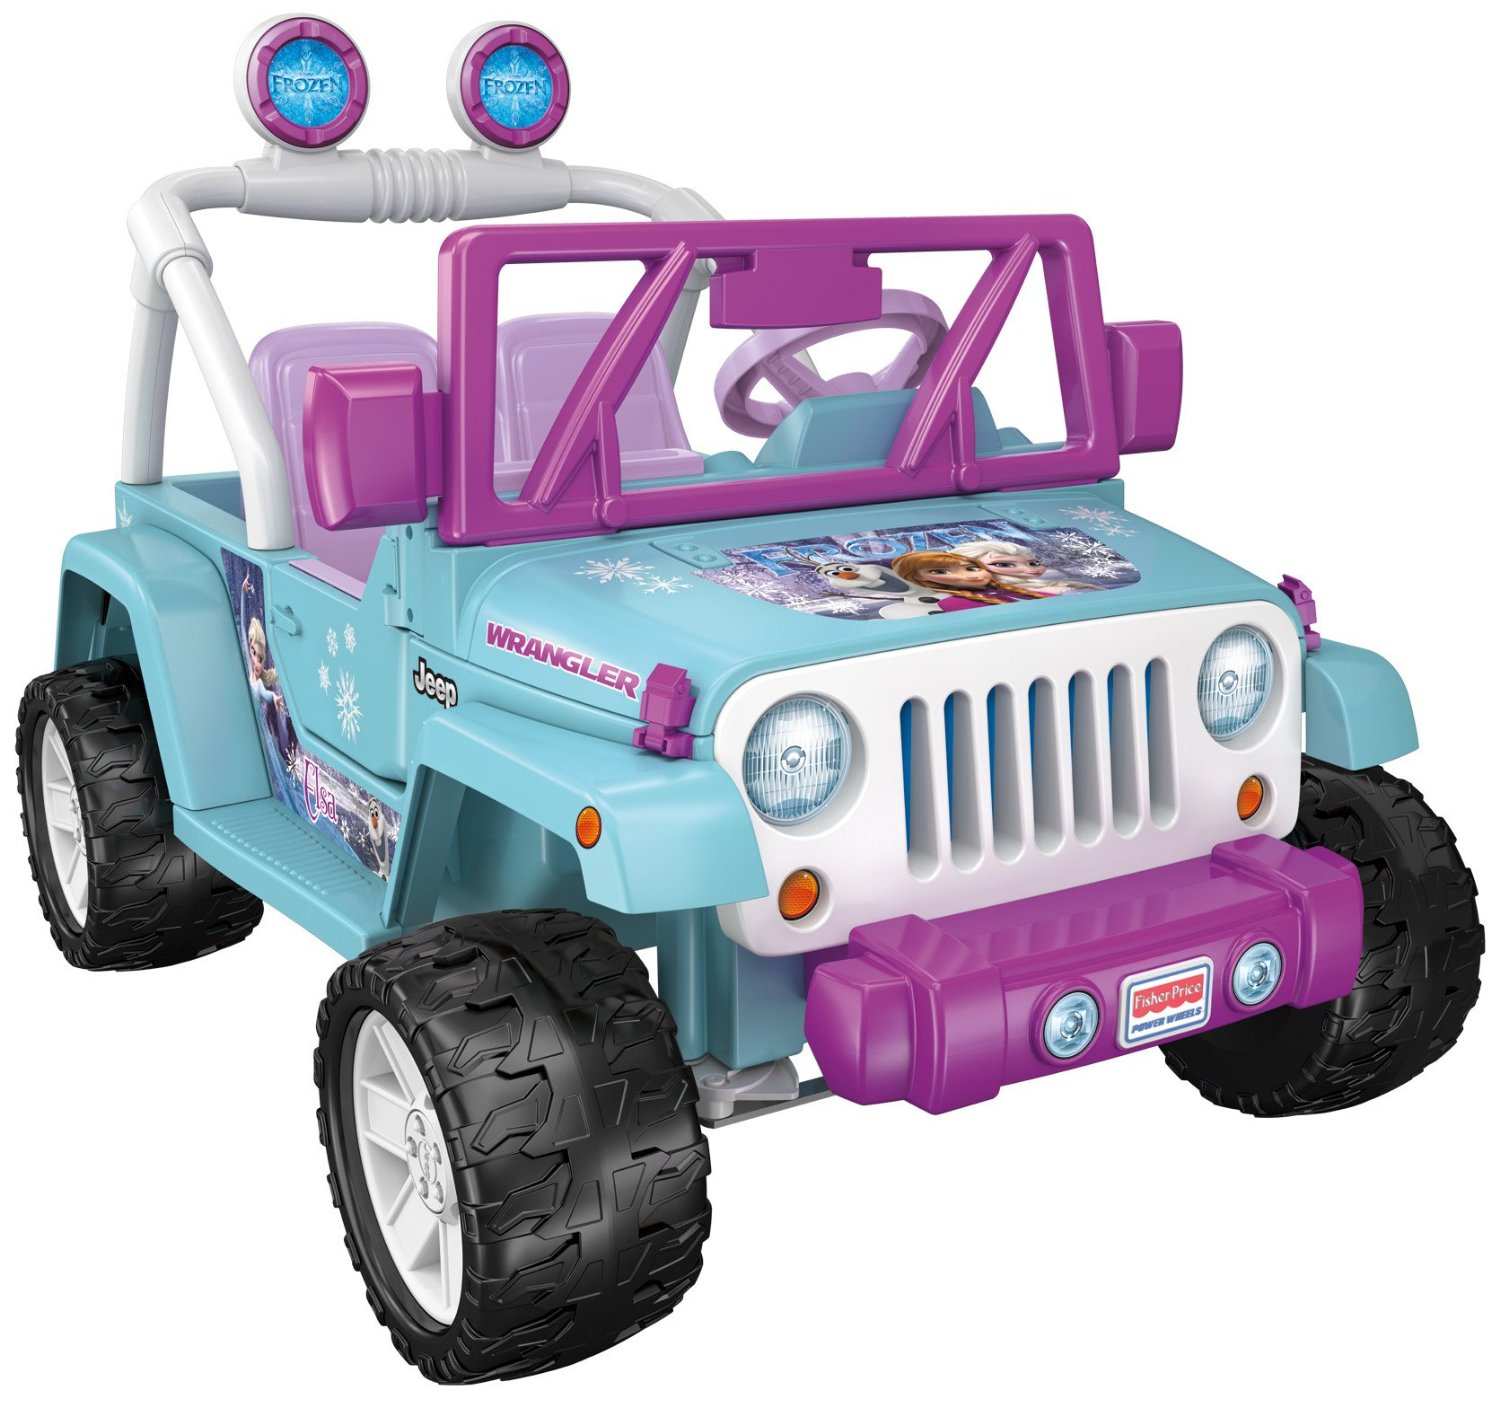 Disney princess jeep with radio